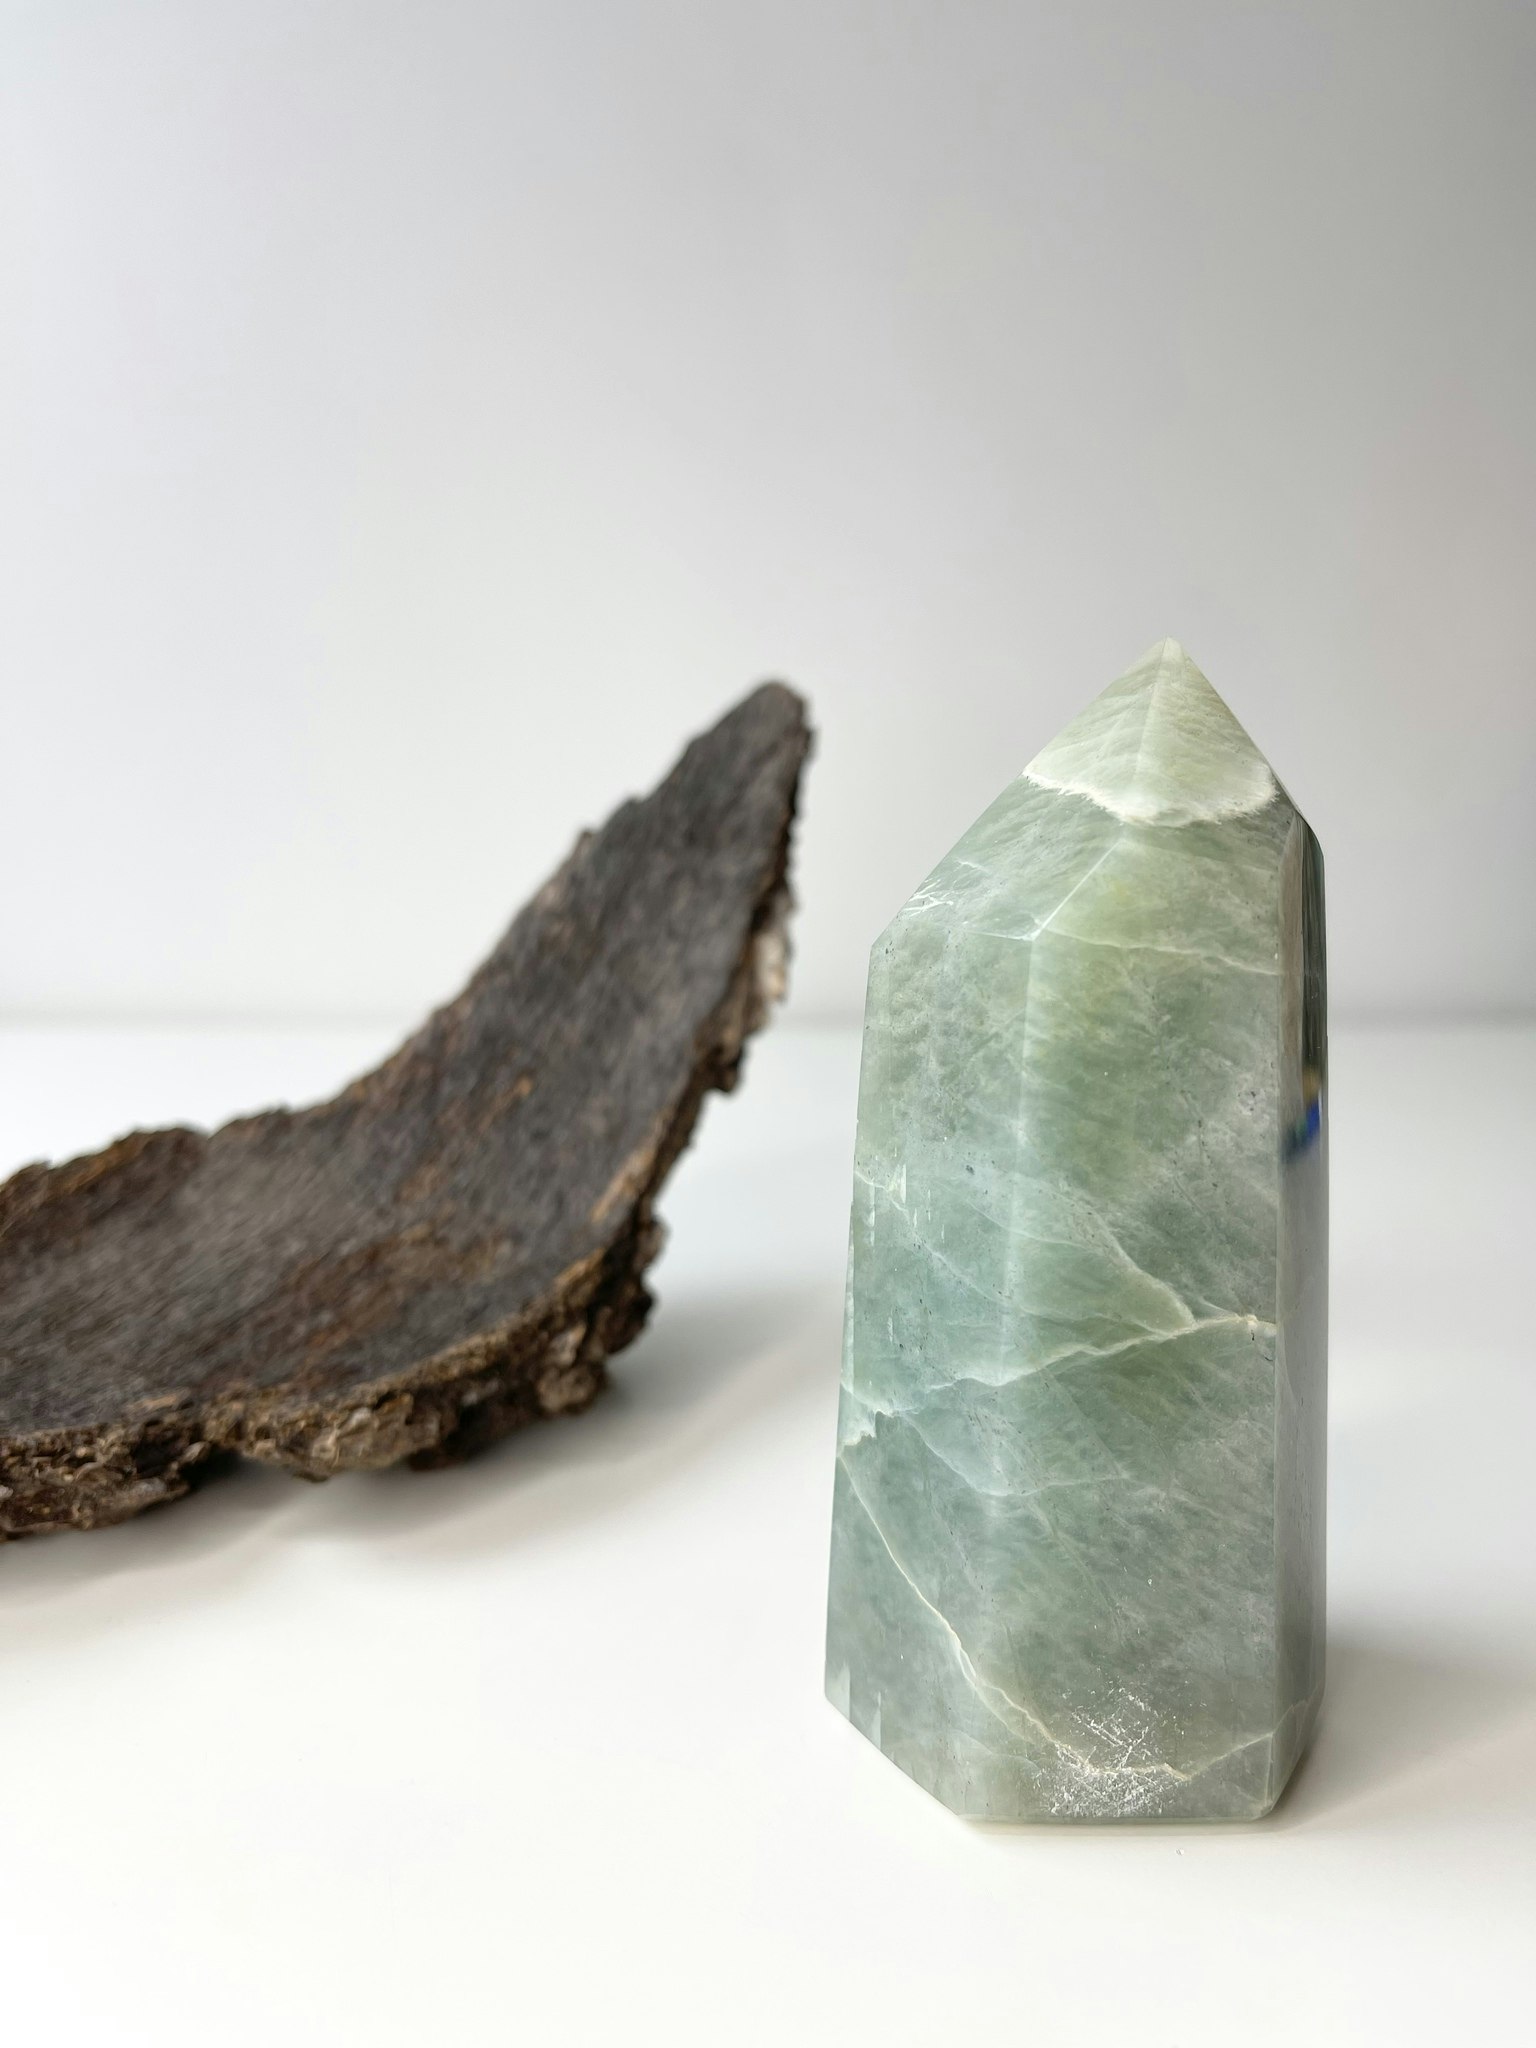 Garnerit (grön månsten), polerad kristallspets